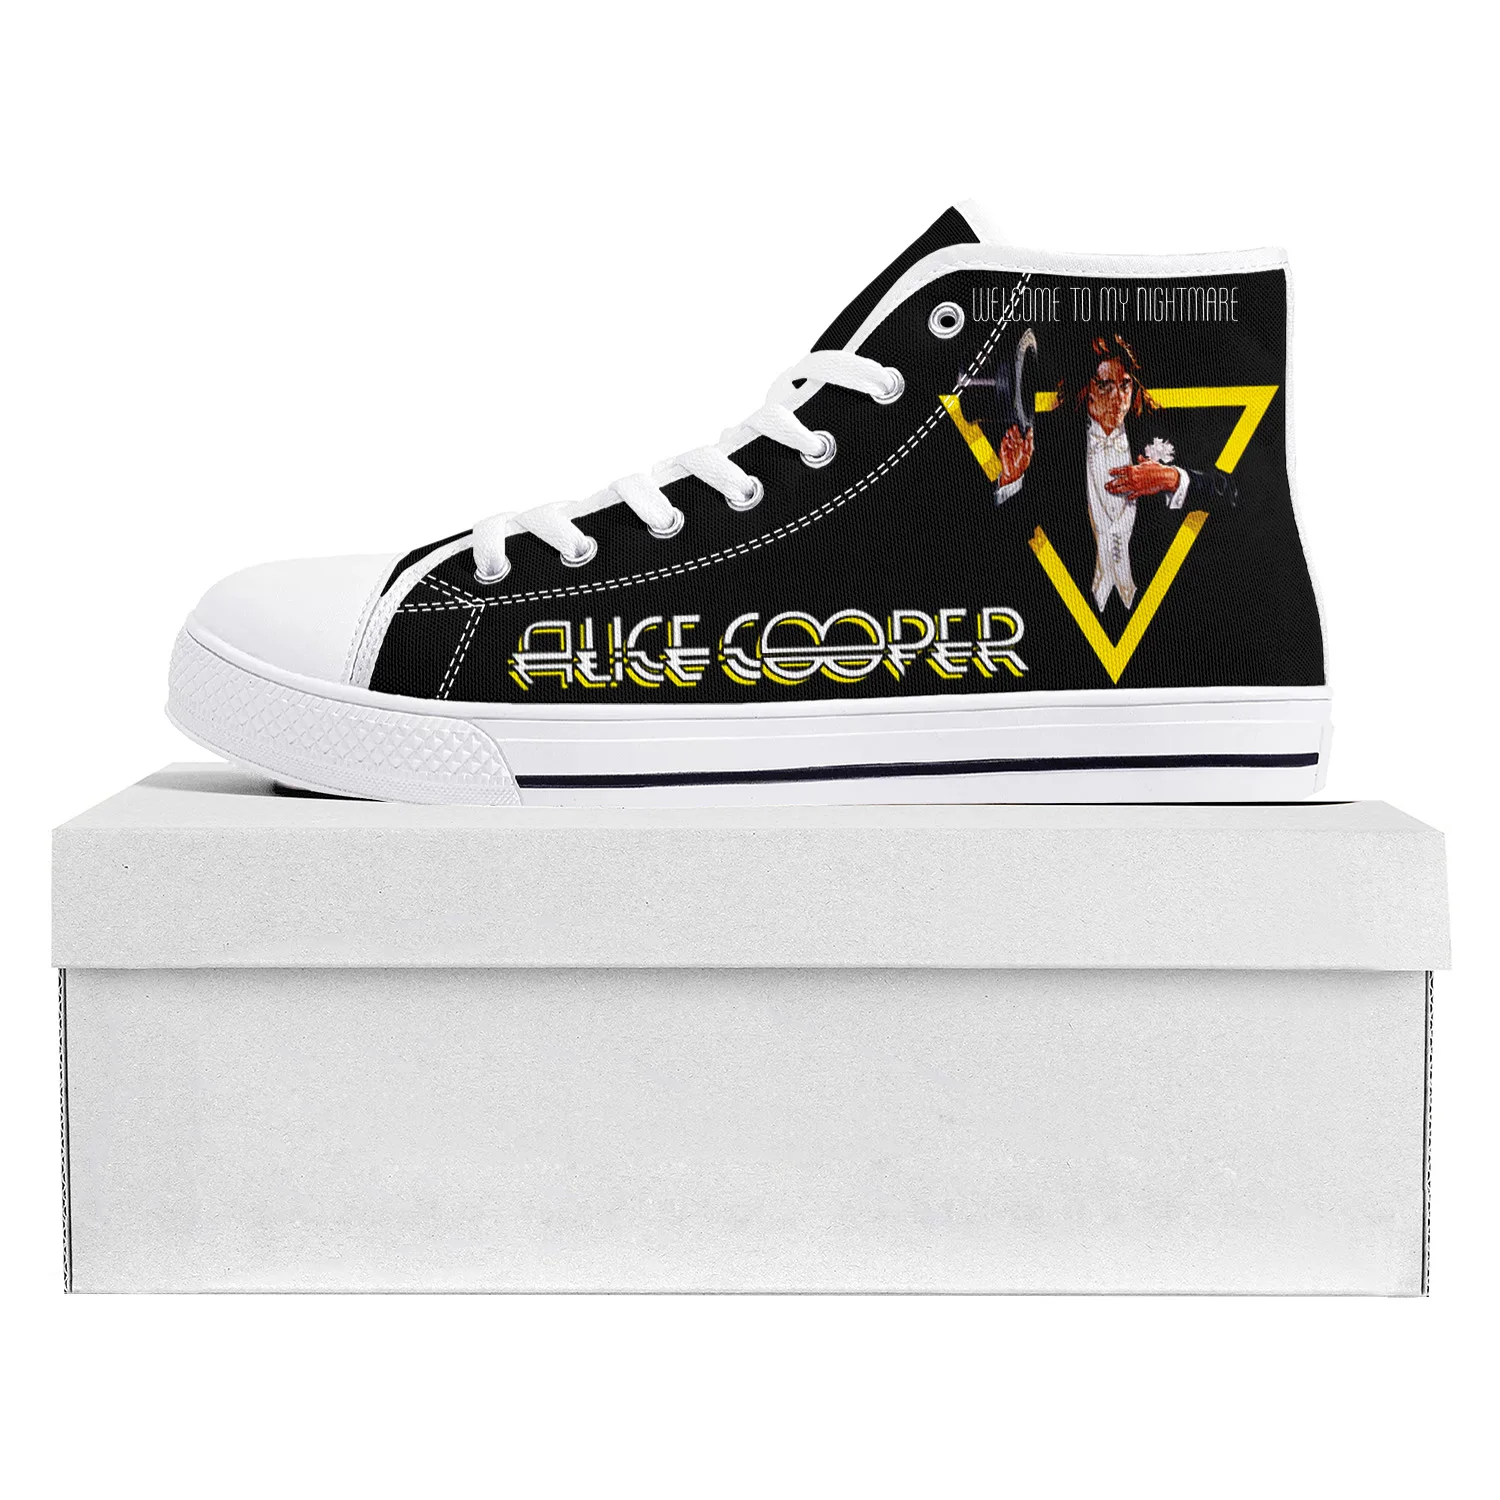 

Кеды Alice Cooper мужские/женские, высокие кроссовки, повседневная парусиновая обувь для подростков, рок-певец, поп, индивидуальный пошив